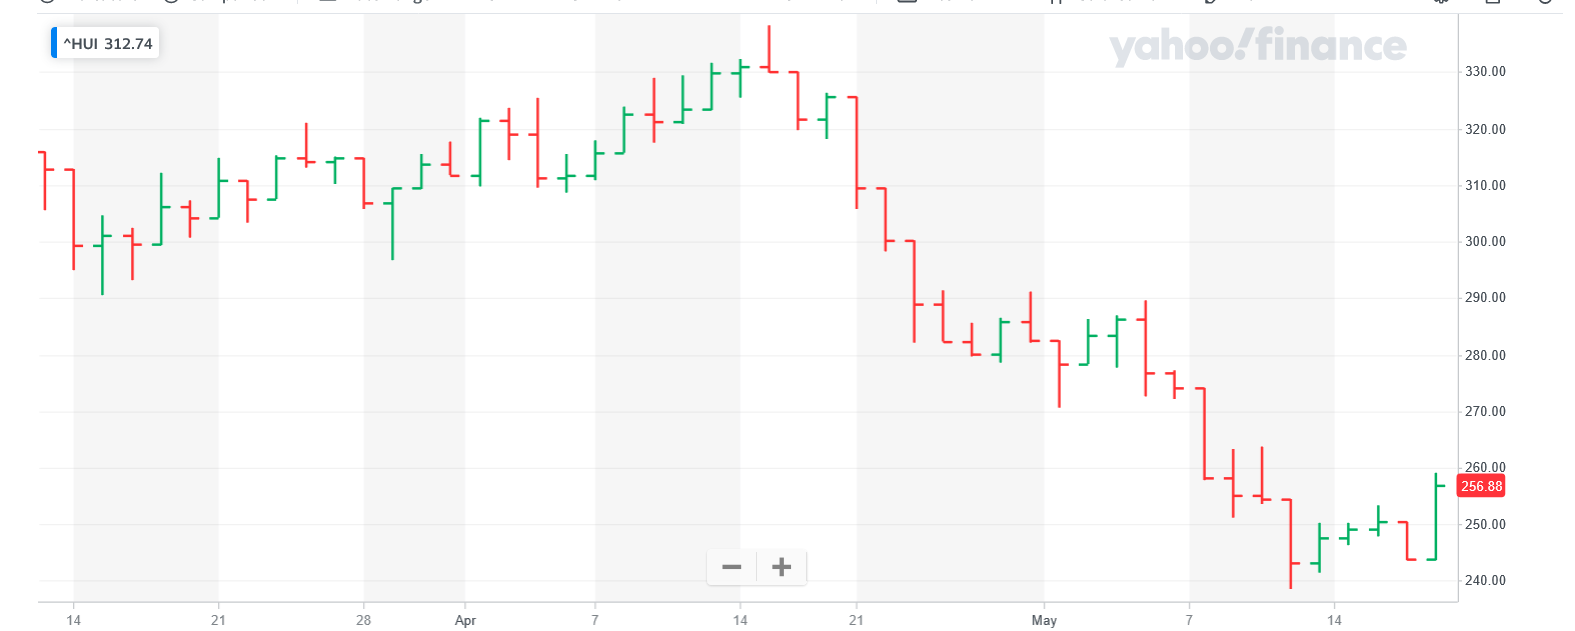 Screenshot 2022-05-19 at 17-59-33 NYSE ARCA GOLD BUGS INDEX (^HUI) Charts Data & News - Yahoo Finance.png